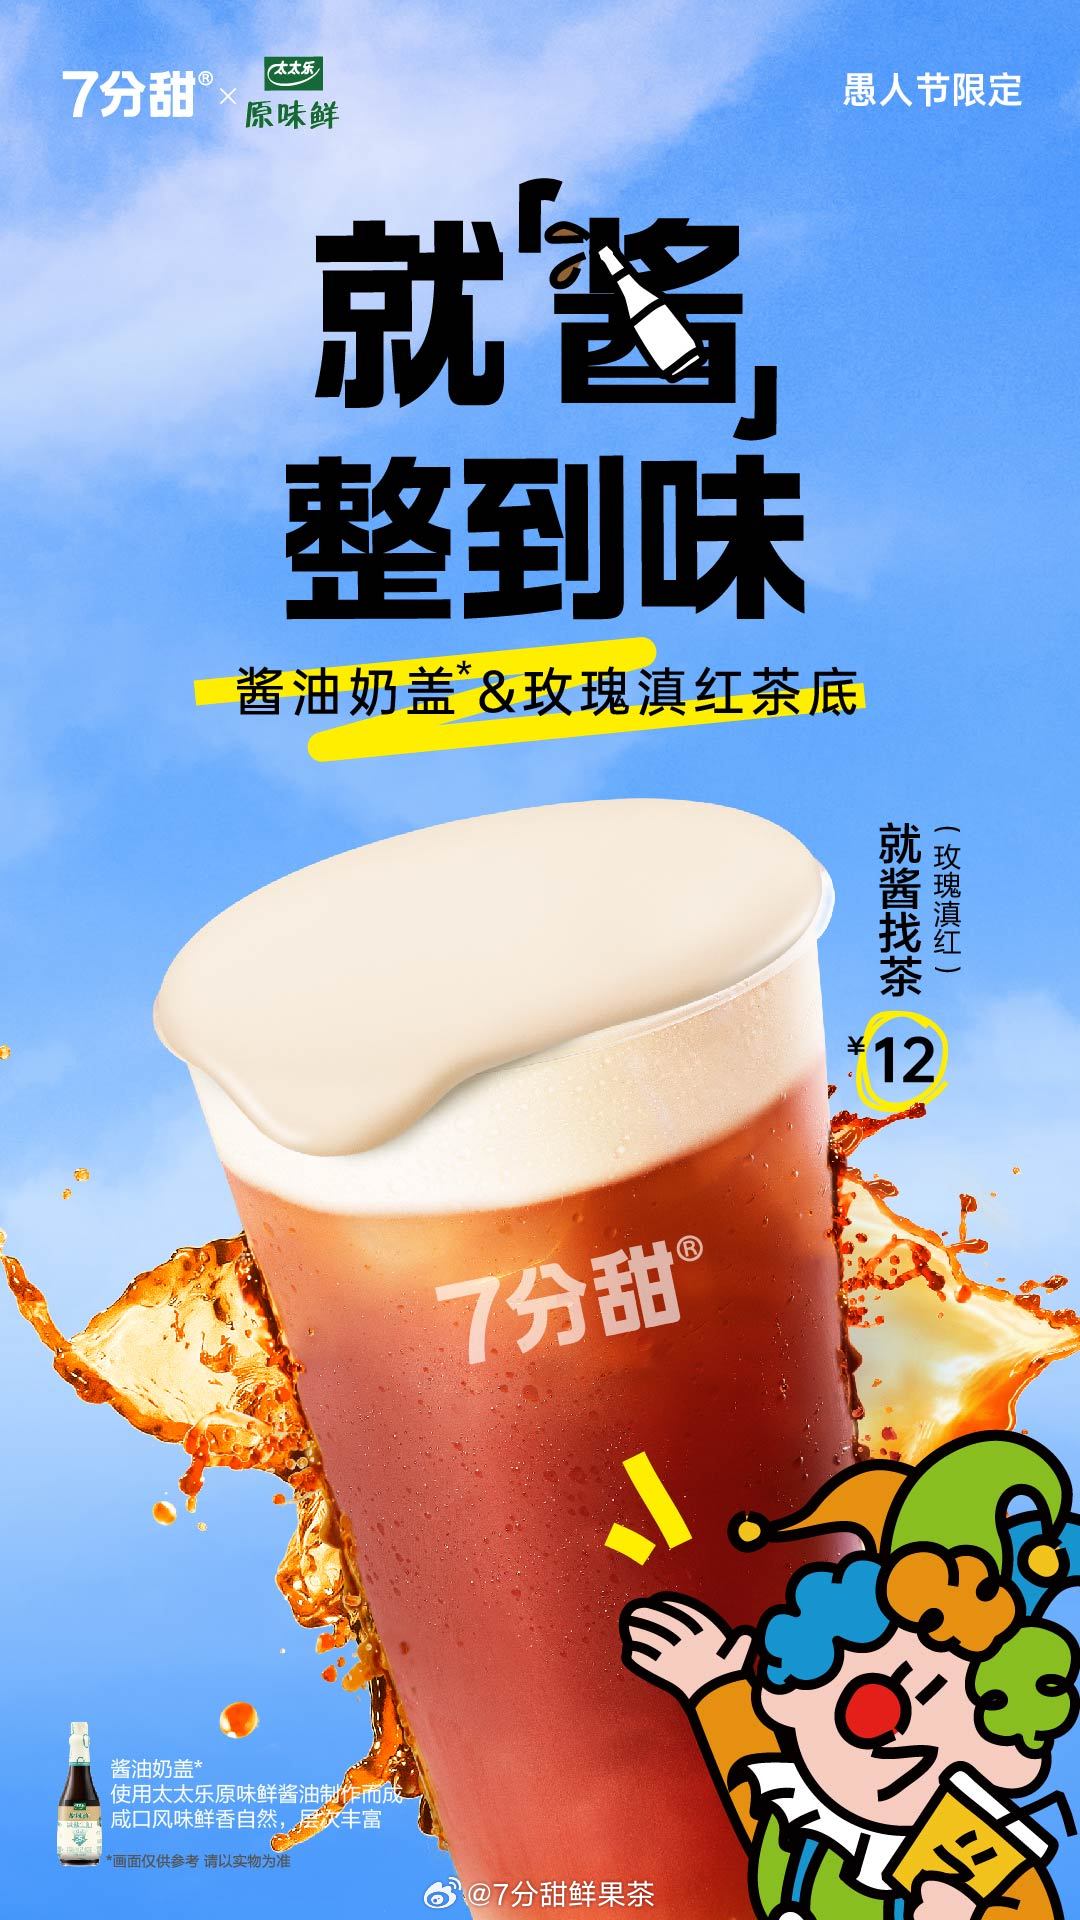 7分甜×太太乐：愚人节用「酱油奶茶」整蛊好友